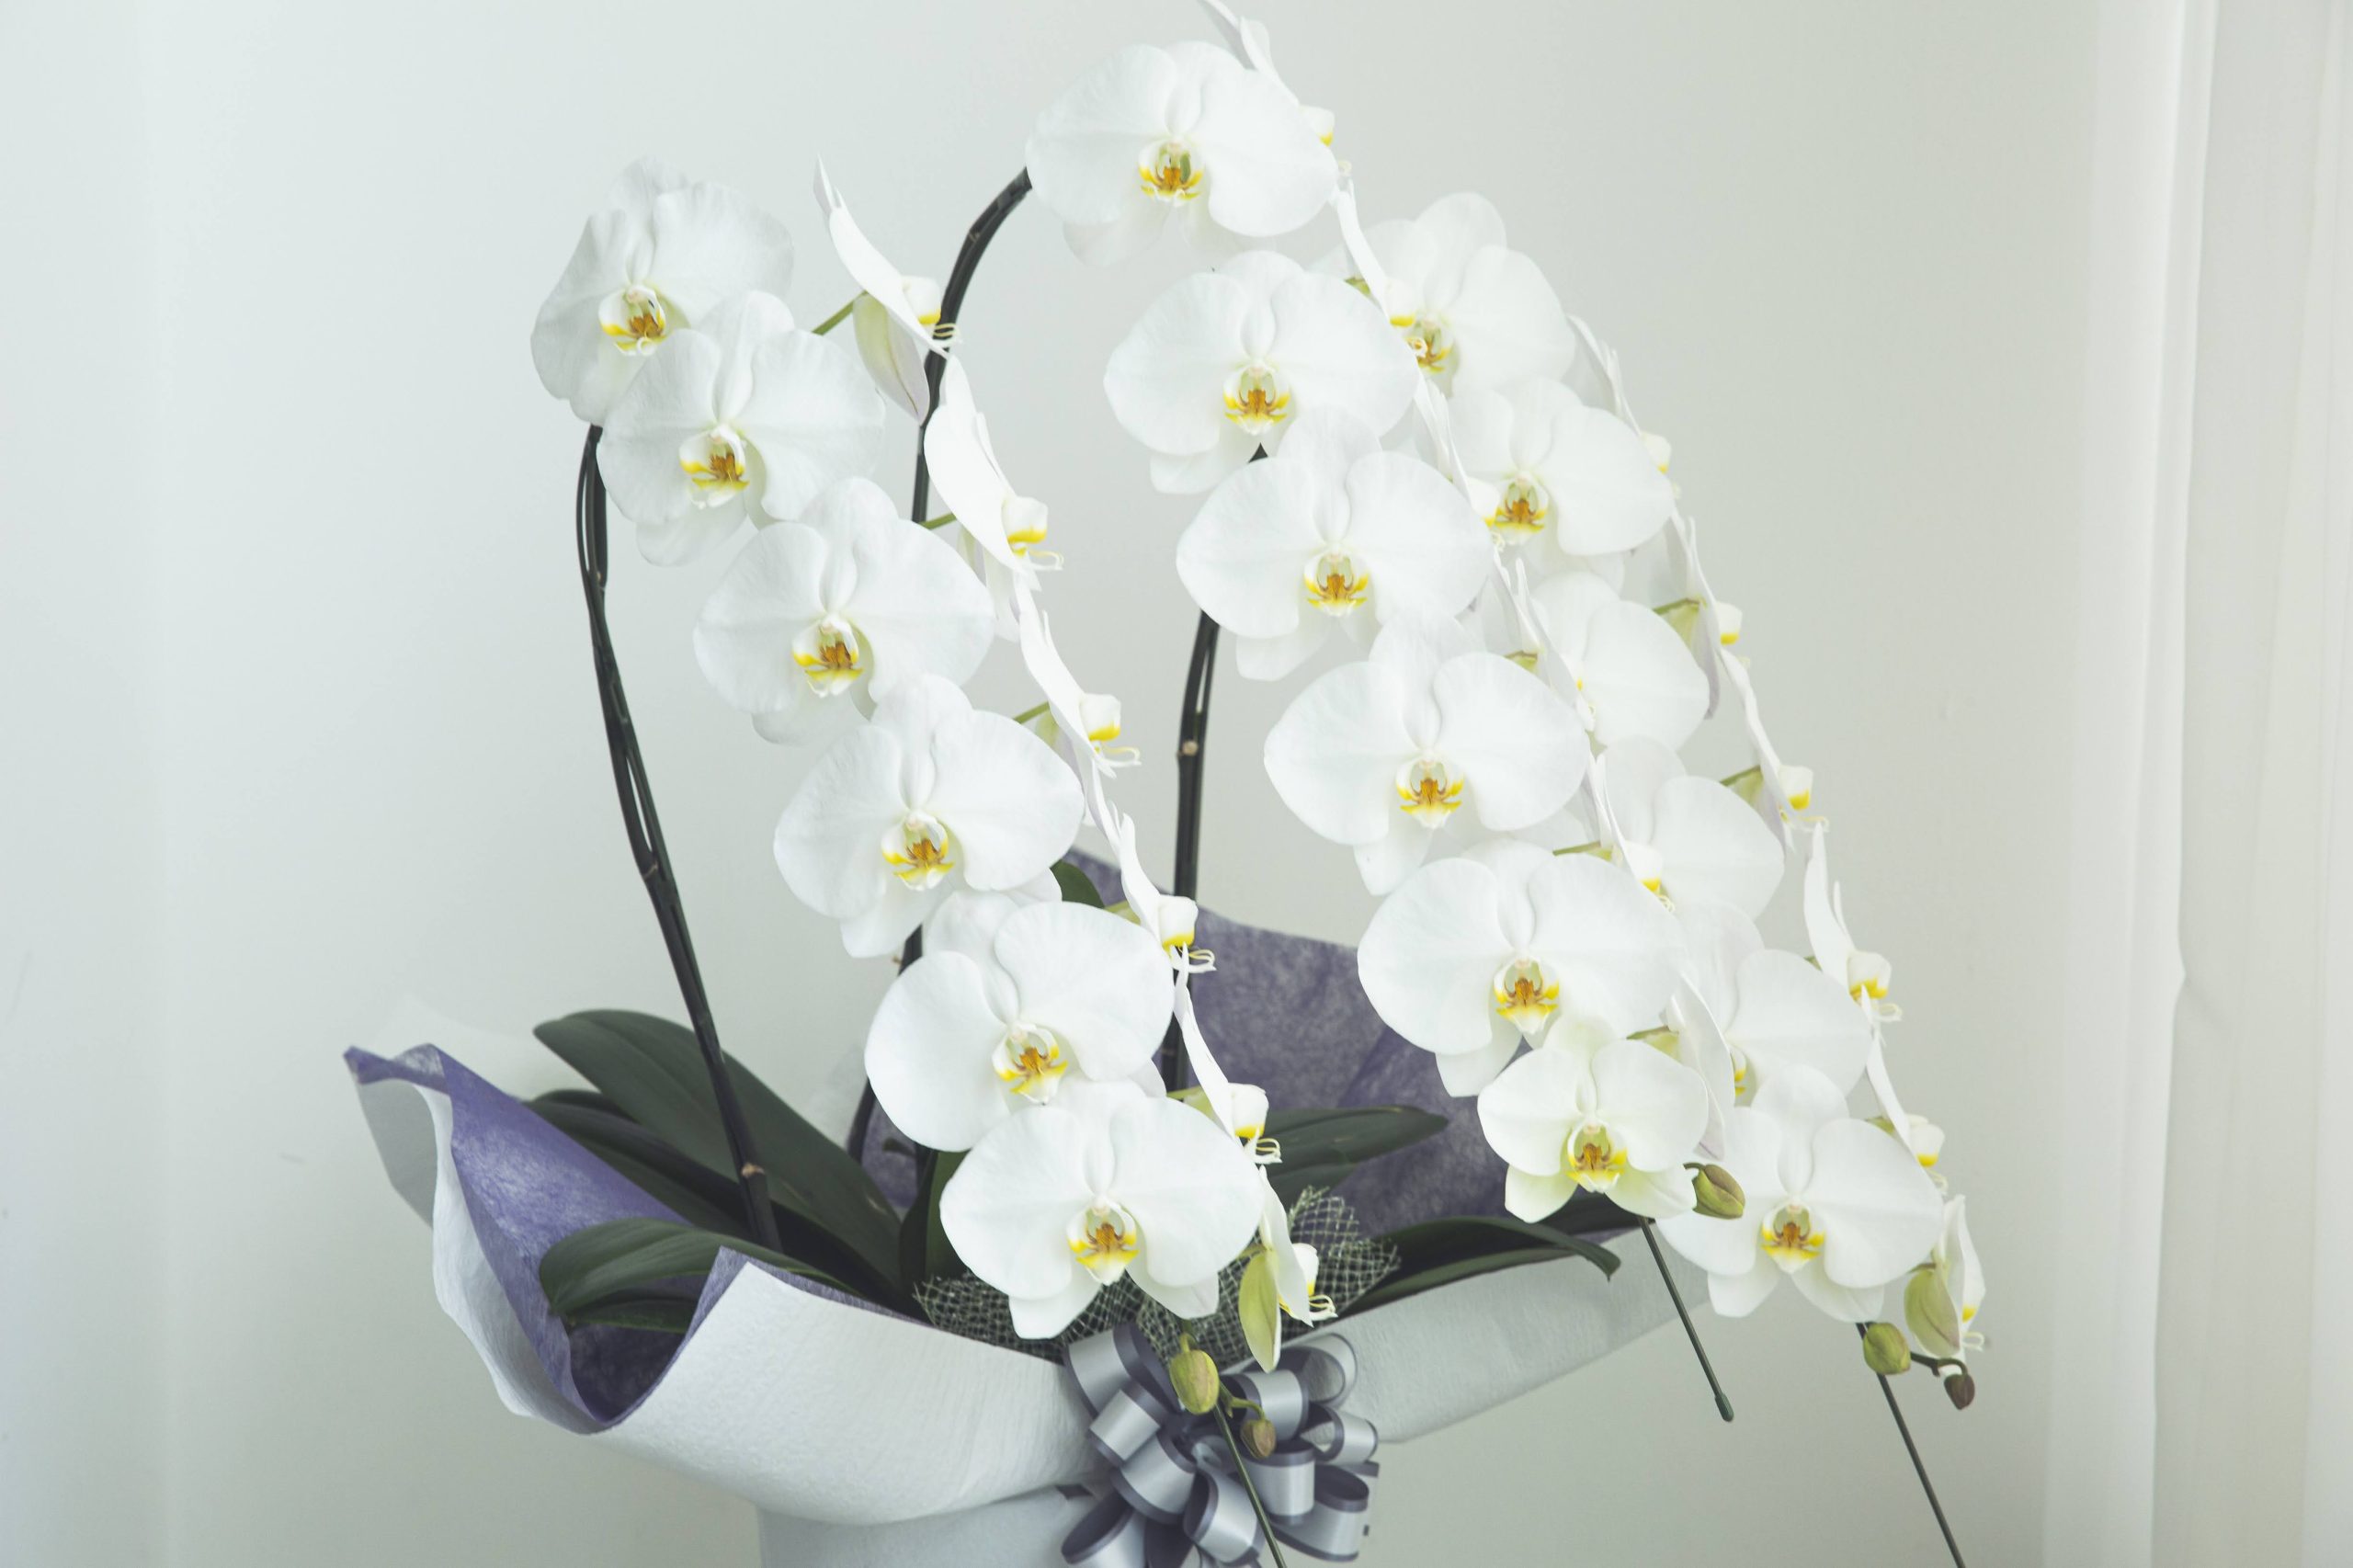 葬儀で贈る供花に胡蝶蘭がふさわしい5つの理由